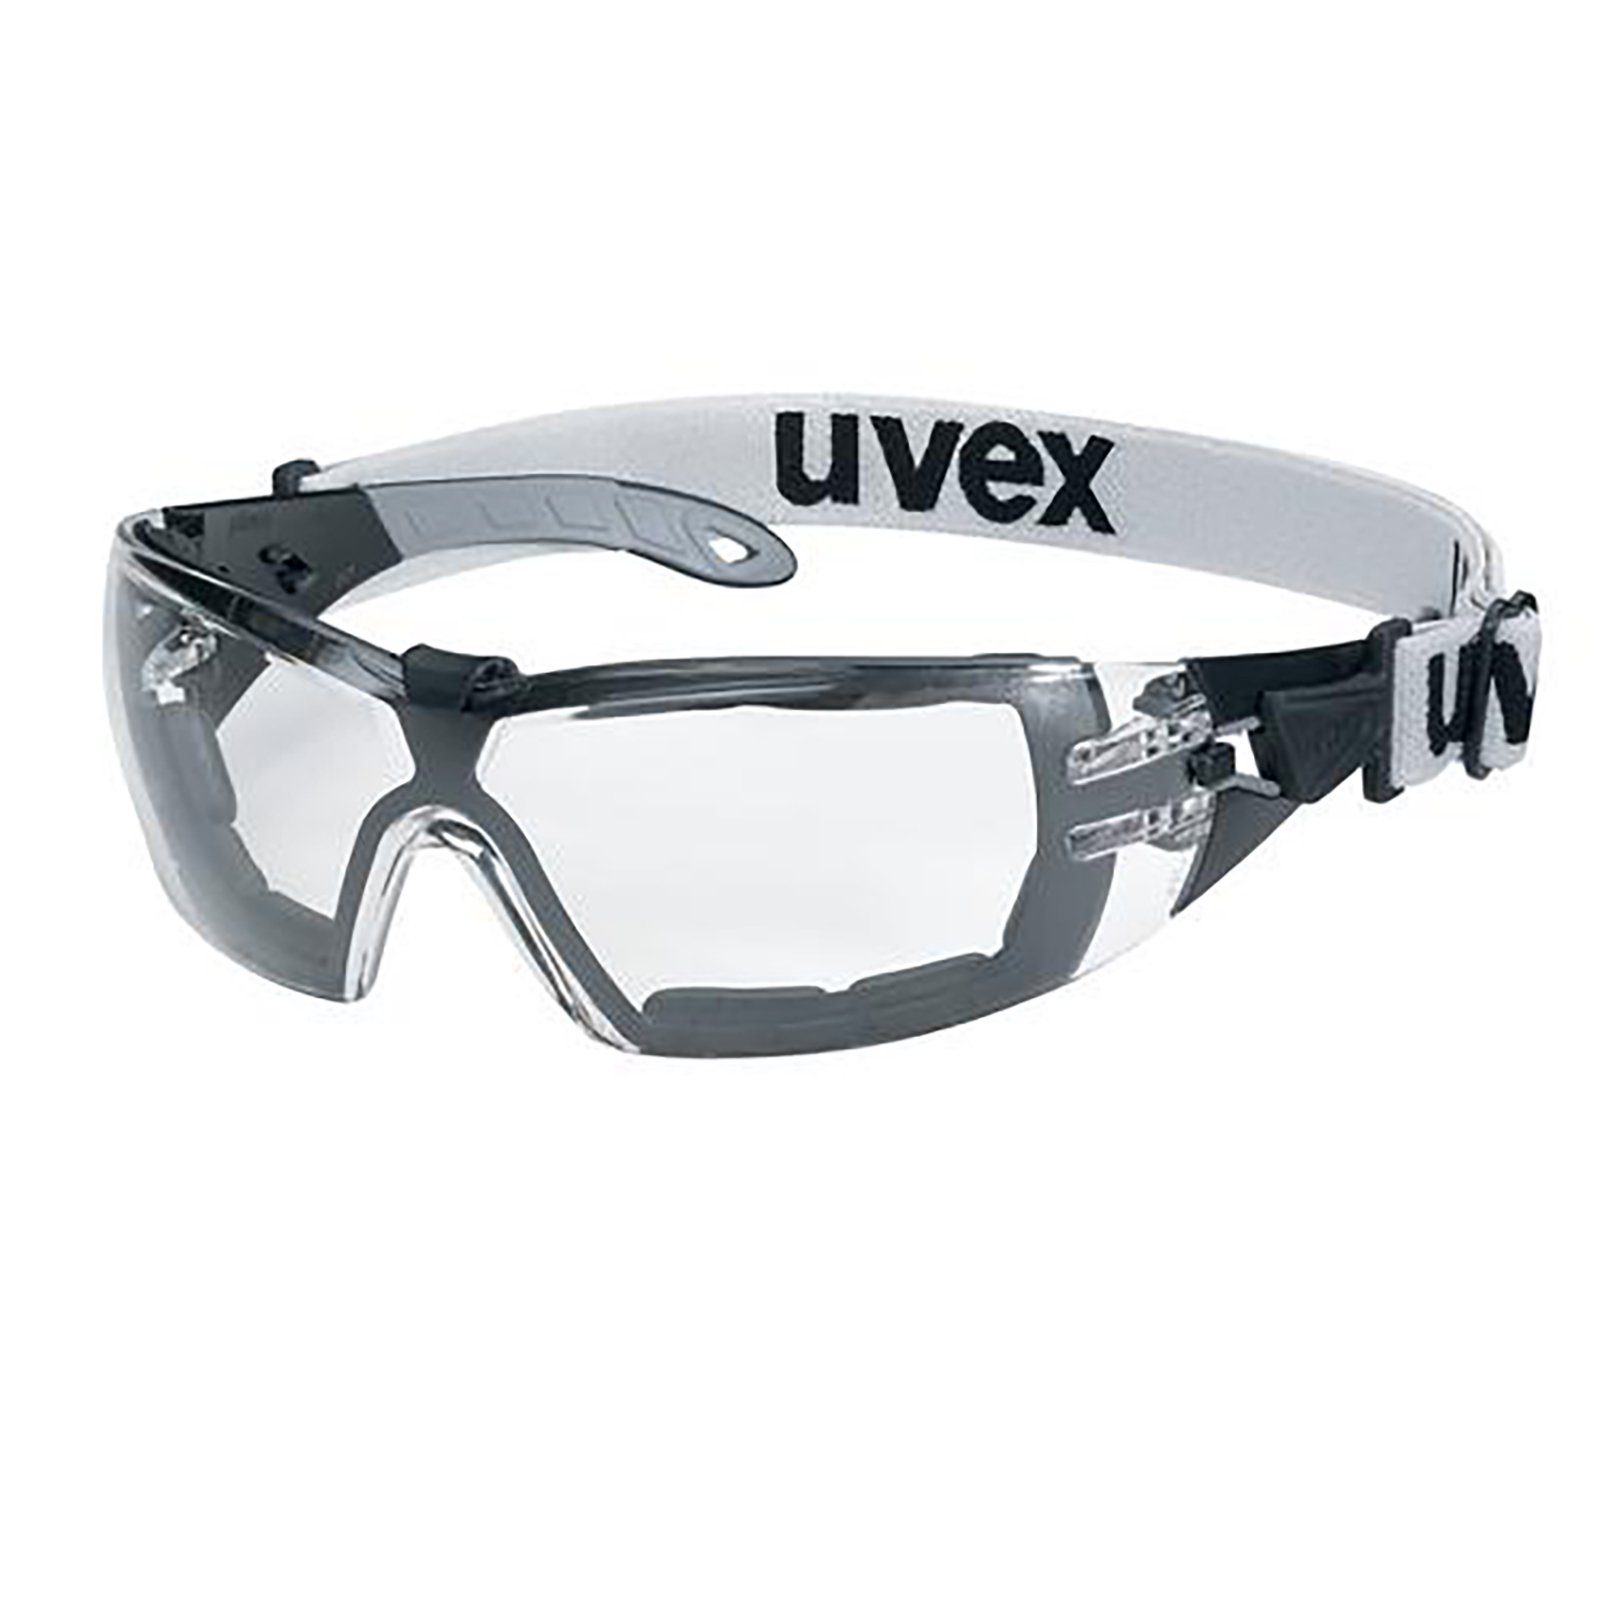 Uvex Arbeitsschutzbrille Bügelbrille pheos s guard sv ext. 9192680 | Schutzbrillen